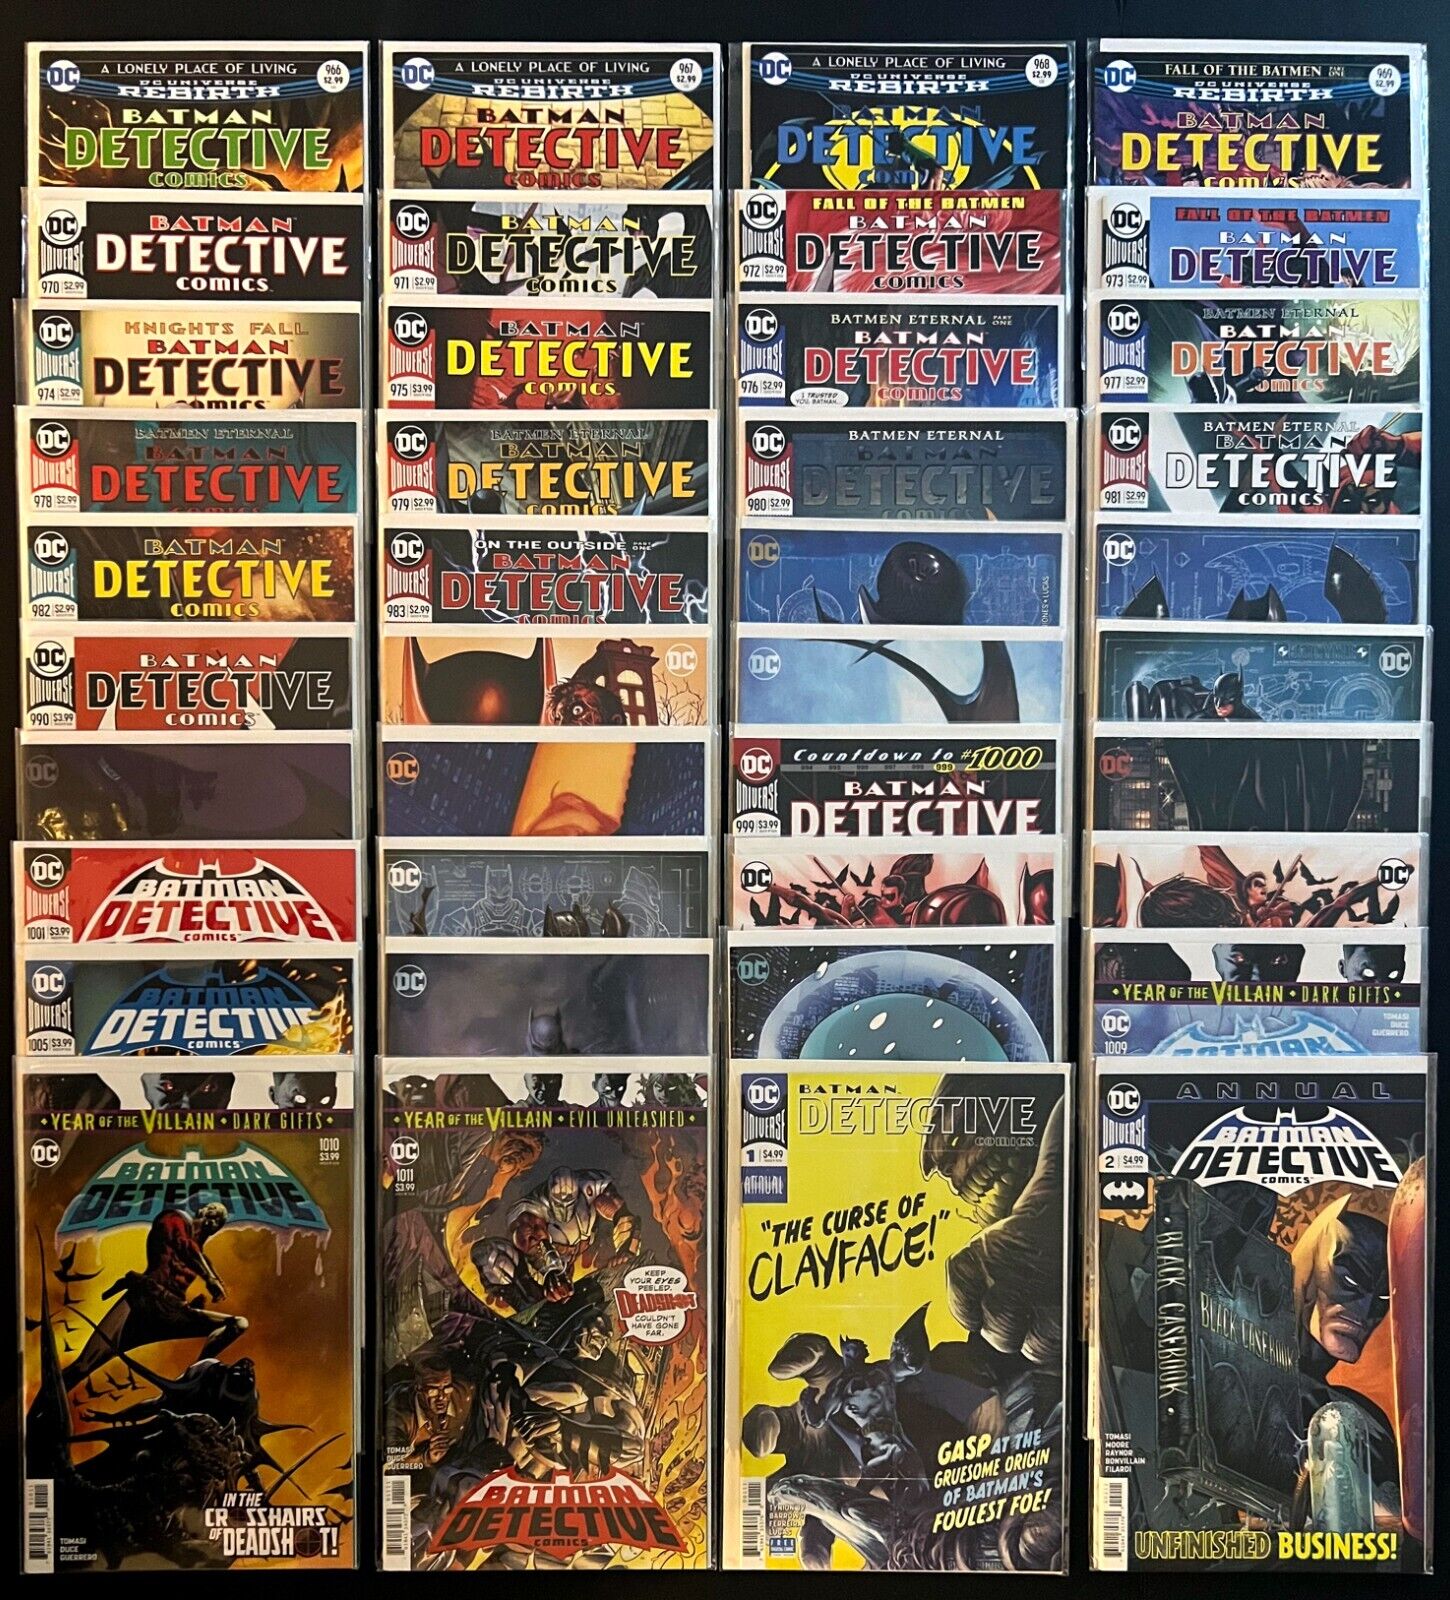 BATMAN DETECTIVE COMICS #966-1011 Hi-Grade 40 Issue Lot Many Variants